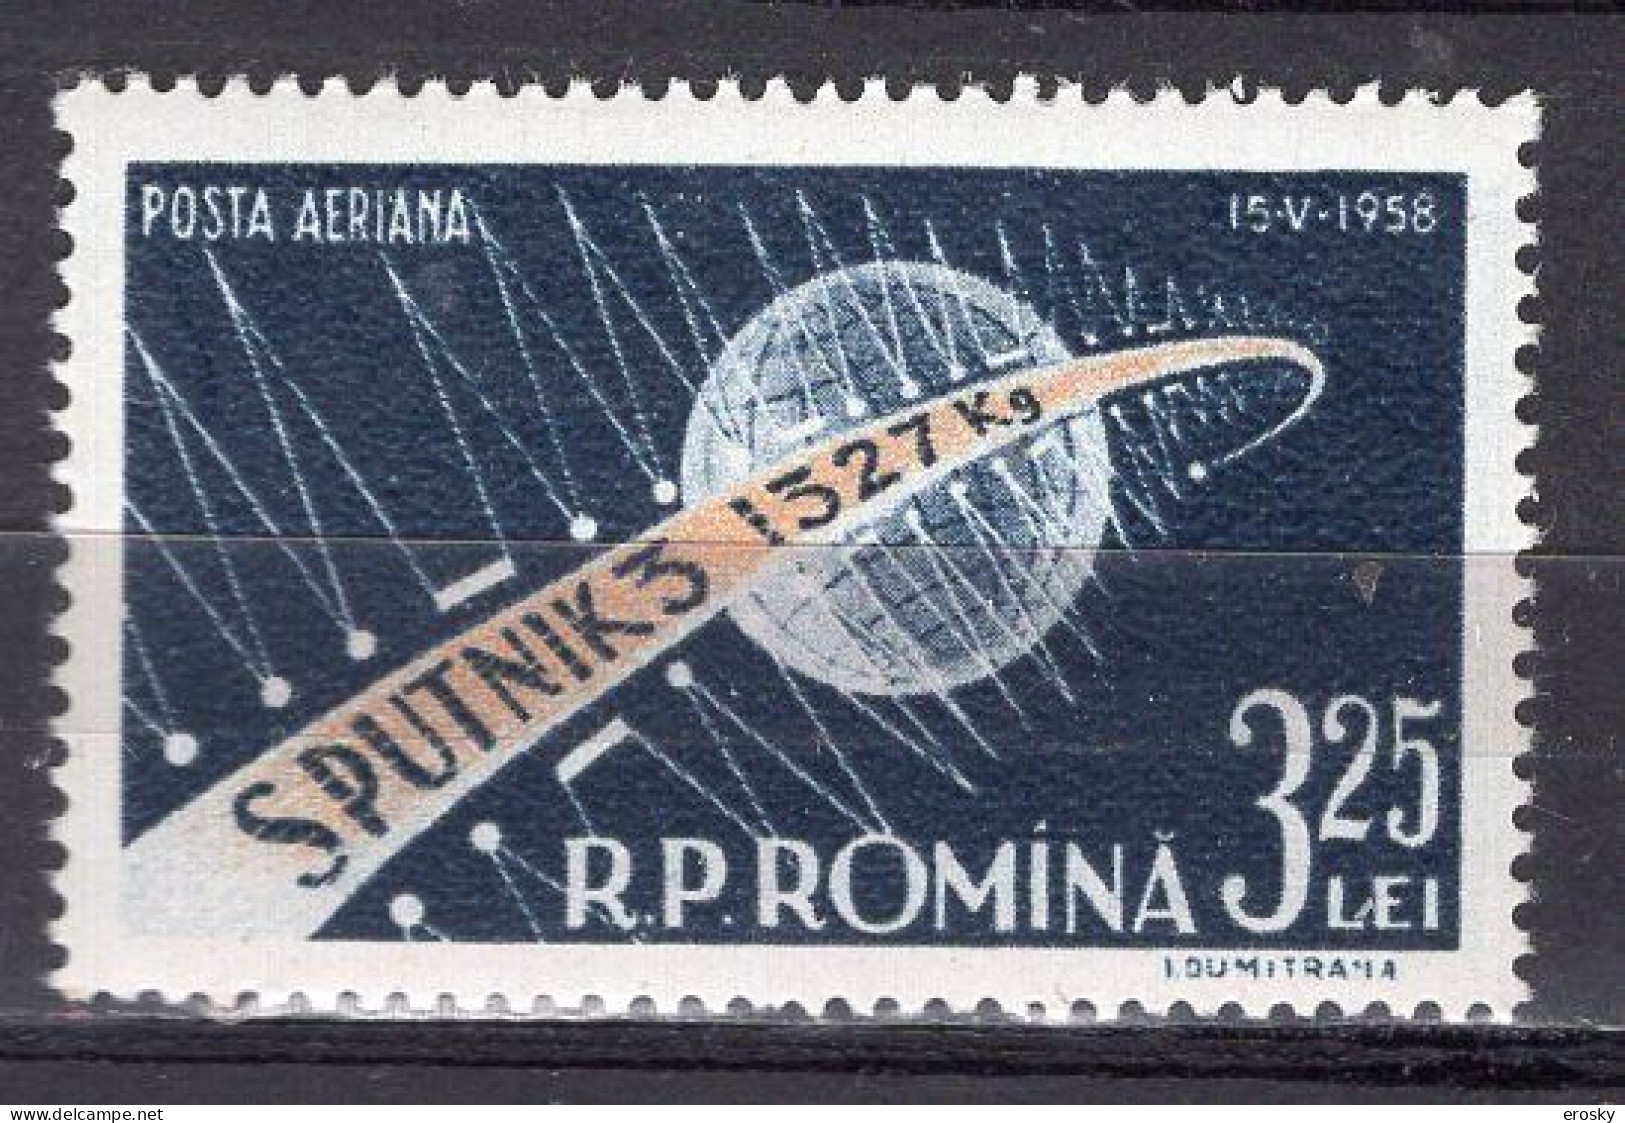 S2505 - ROMANIA ROUMANIE AERIENNE Yv N°87 ** ESPACE SPACE - Ungebraucht